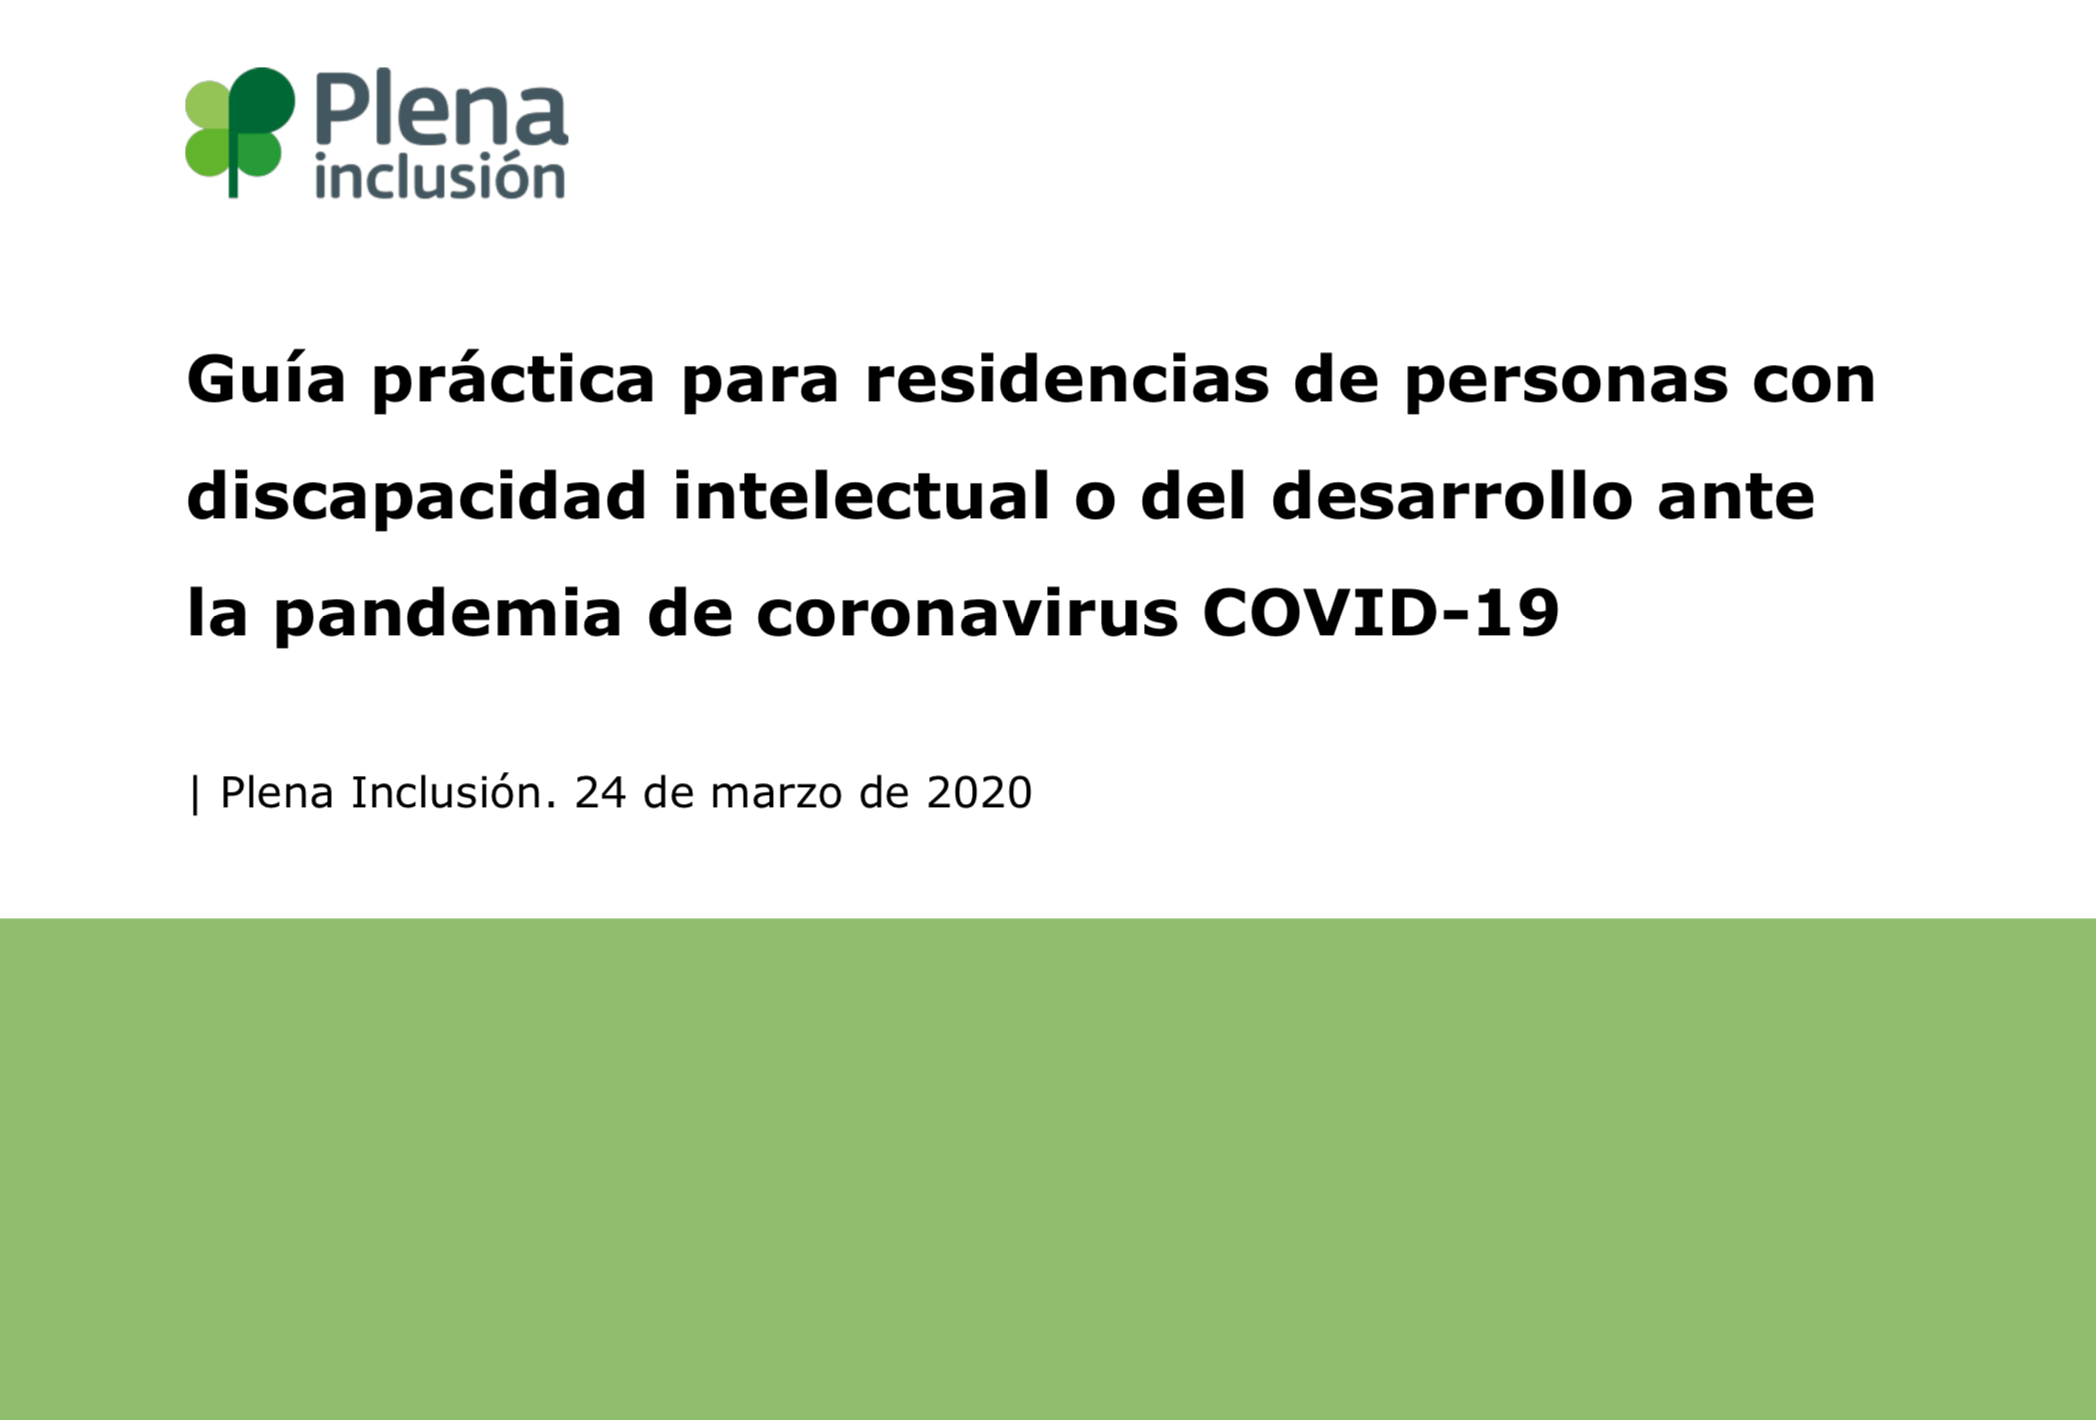 Ir a Plena inclusión España publica una guía práctica para residencias de personas con discapacidad intelectual o del desarrollo ante la pandemia de Covid-19